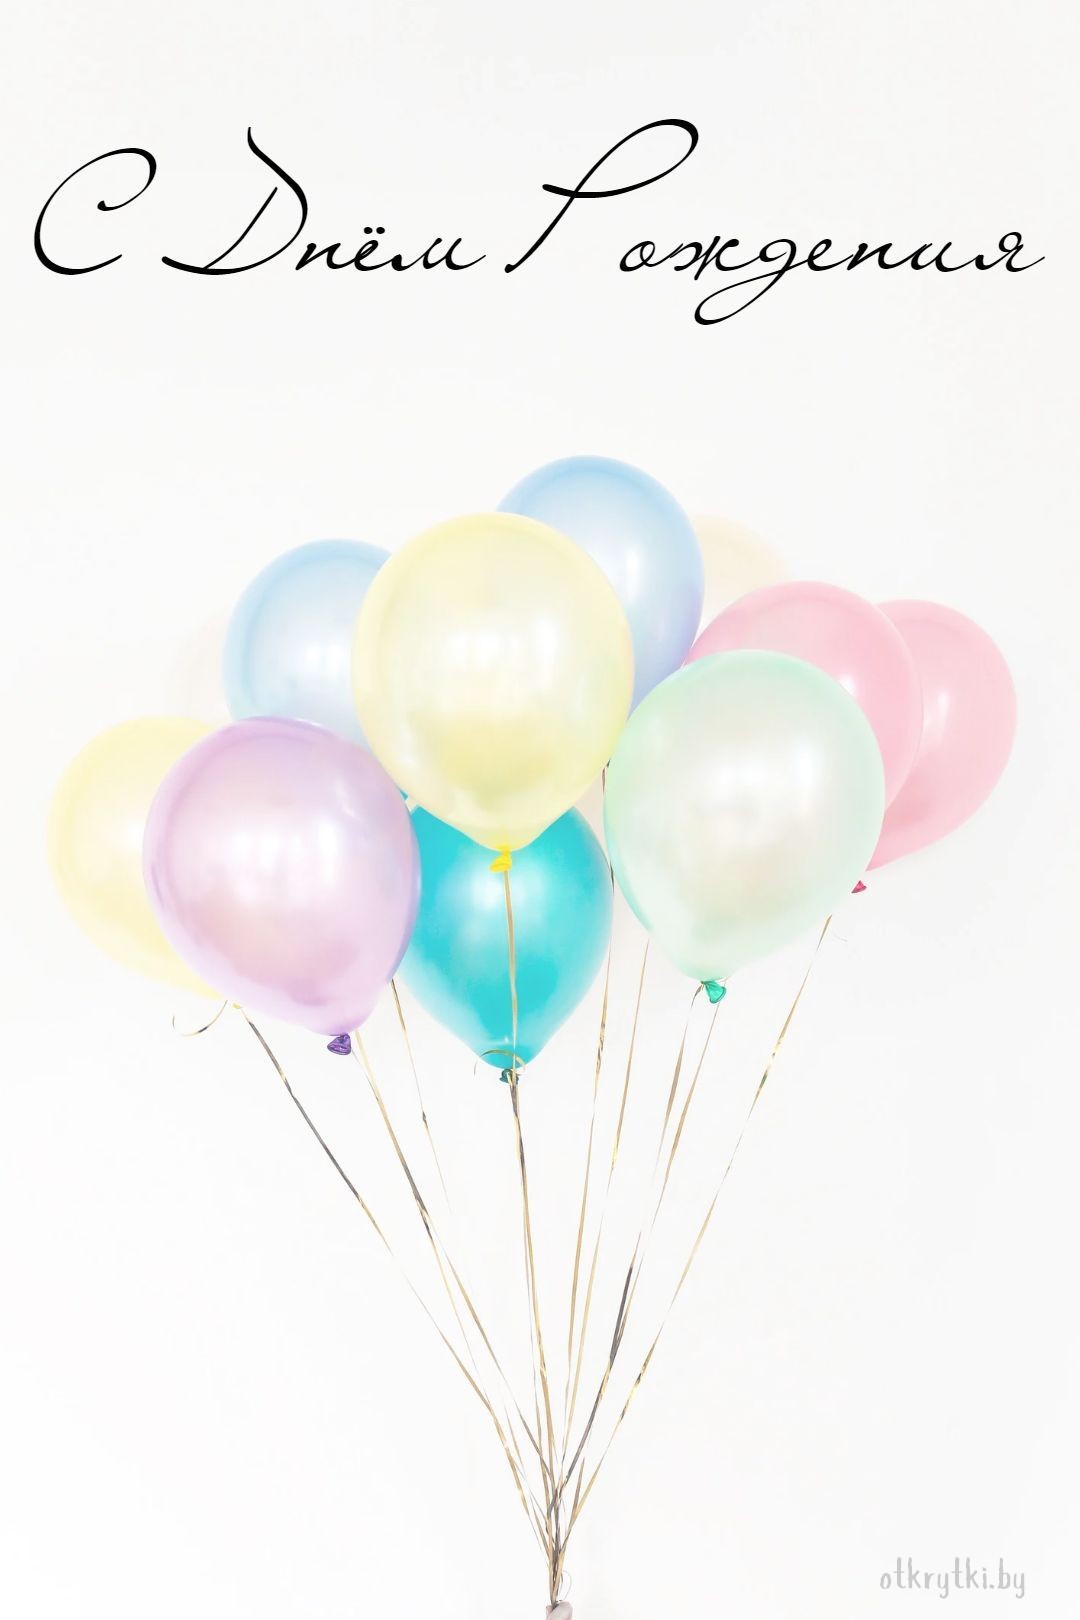 Картинка с днем рождения с шариками